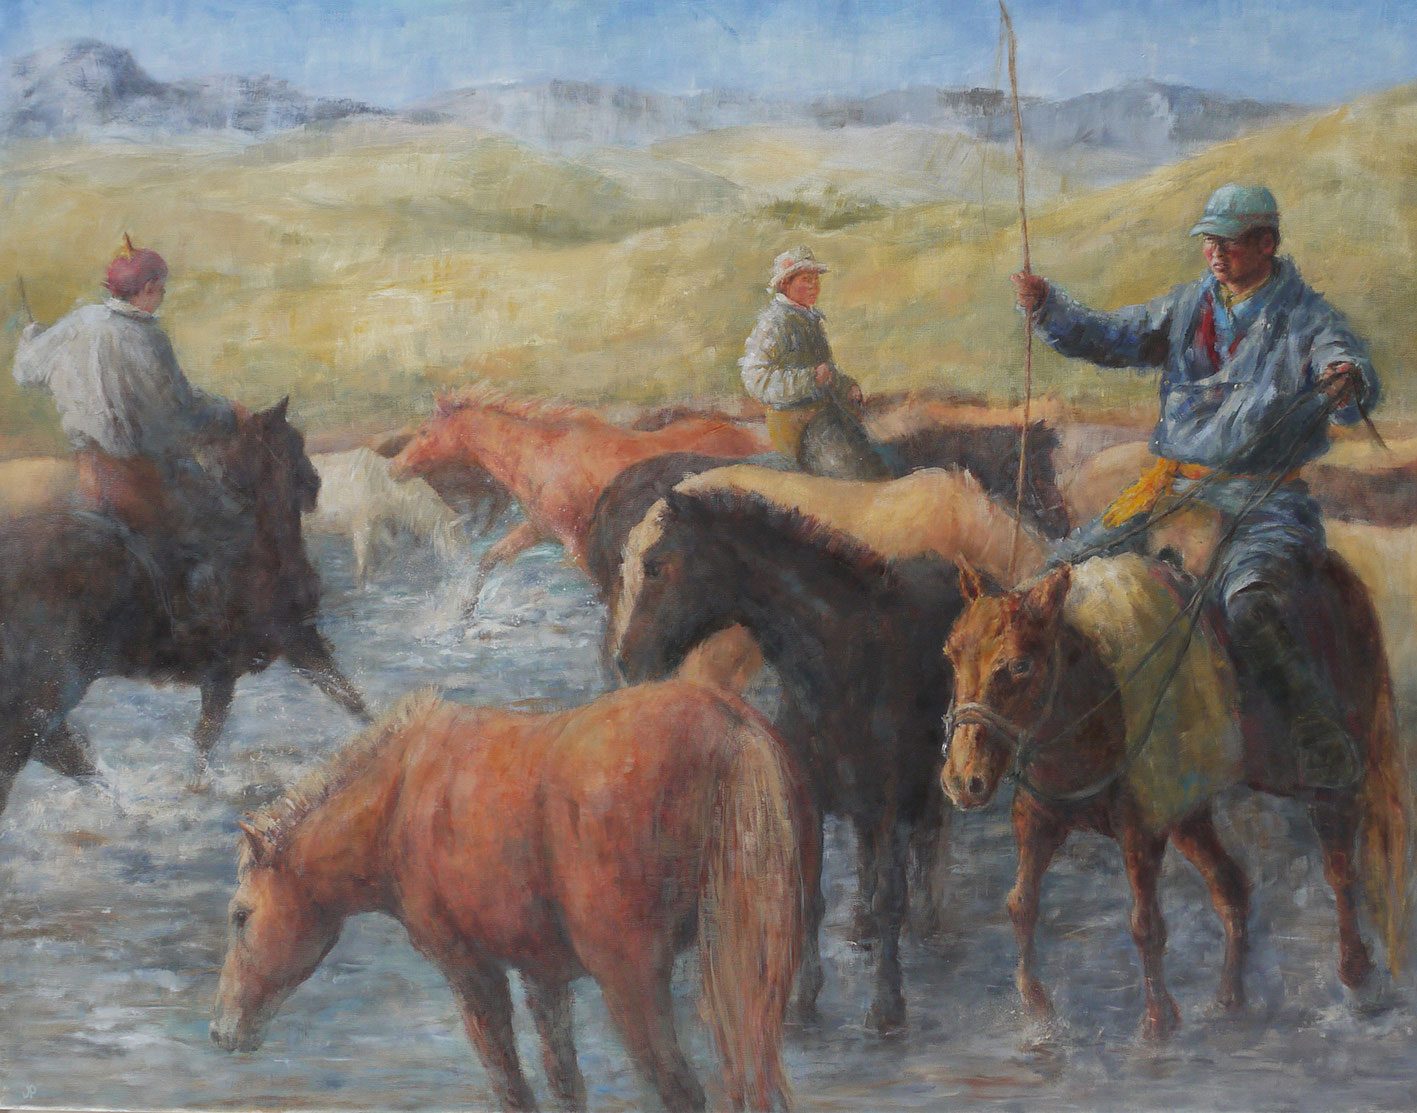 'Herders & Horses. Mongolia' Oil on Linen 71x91cm